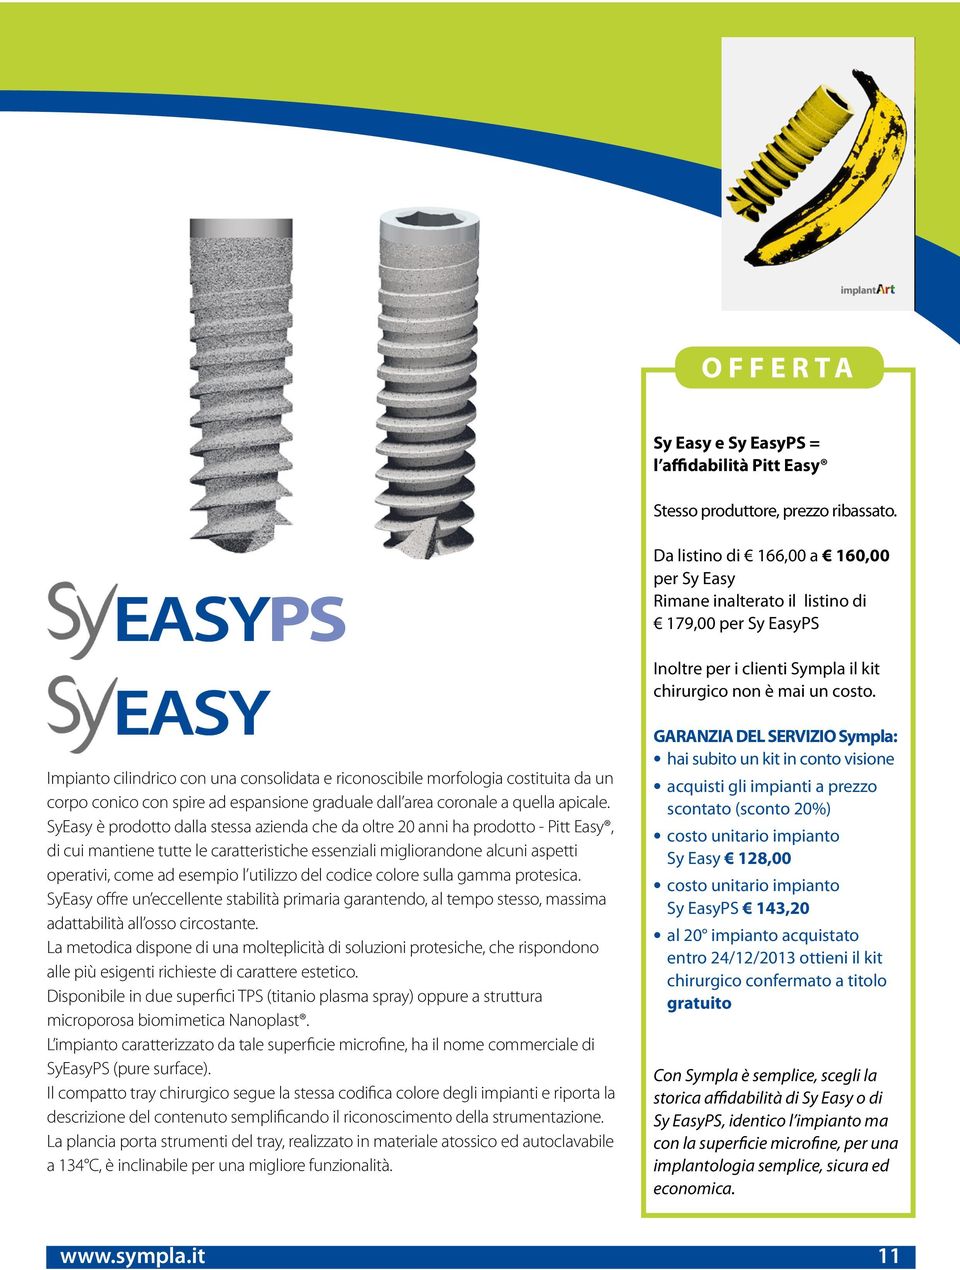 SyEasy è prodotto dalla stessa azienda che da oltre 20 anni ha prodotto - Pitt Easy, di cui mantiene tutte le caratteristiche essenziali migliorandone alcuni aspetti operativi, come ad esempio l